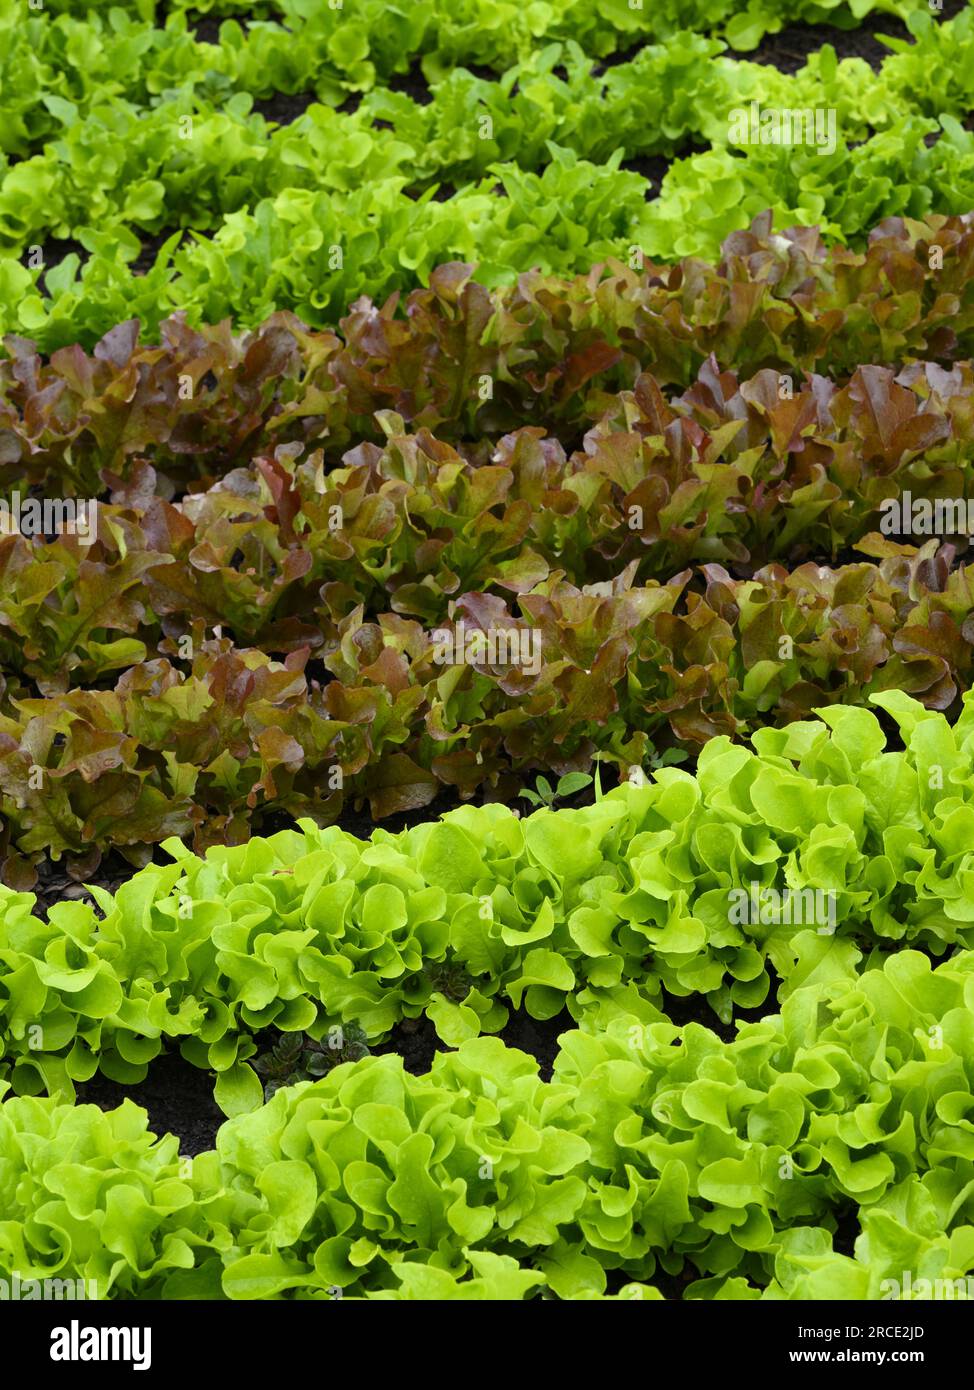 Gemischte Bio-essbare Pflanzen in Küchen-Gartenbett (frische grüne und rote Blätter, hausgemachte Blattnahrung, Gemüsefeld) - West Yorkshire, England, Großbritannien. Stockfoto